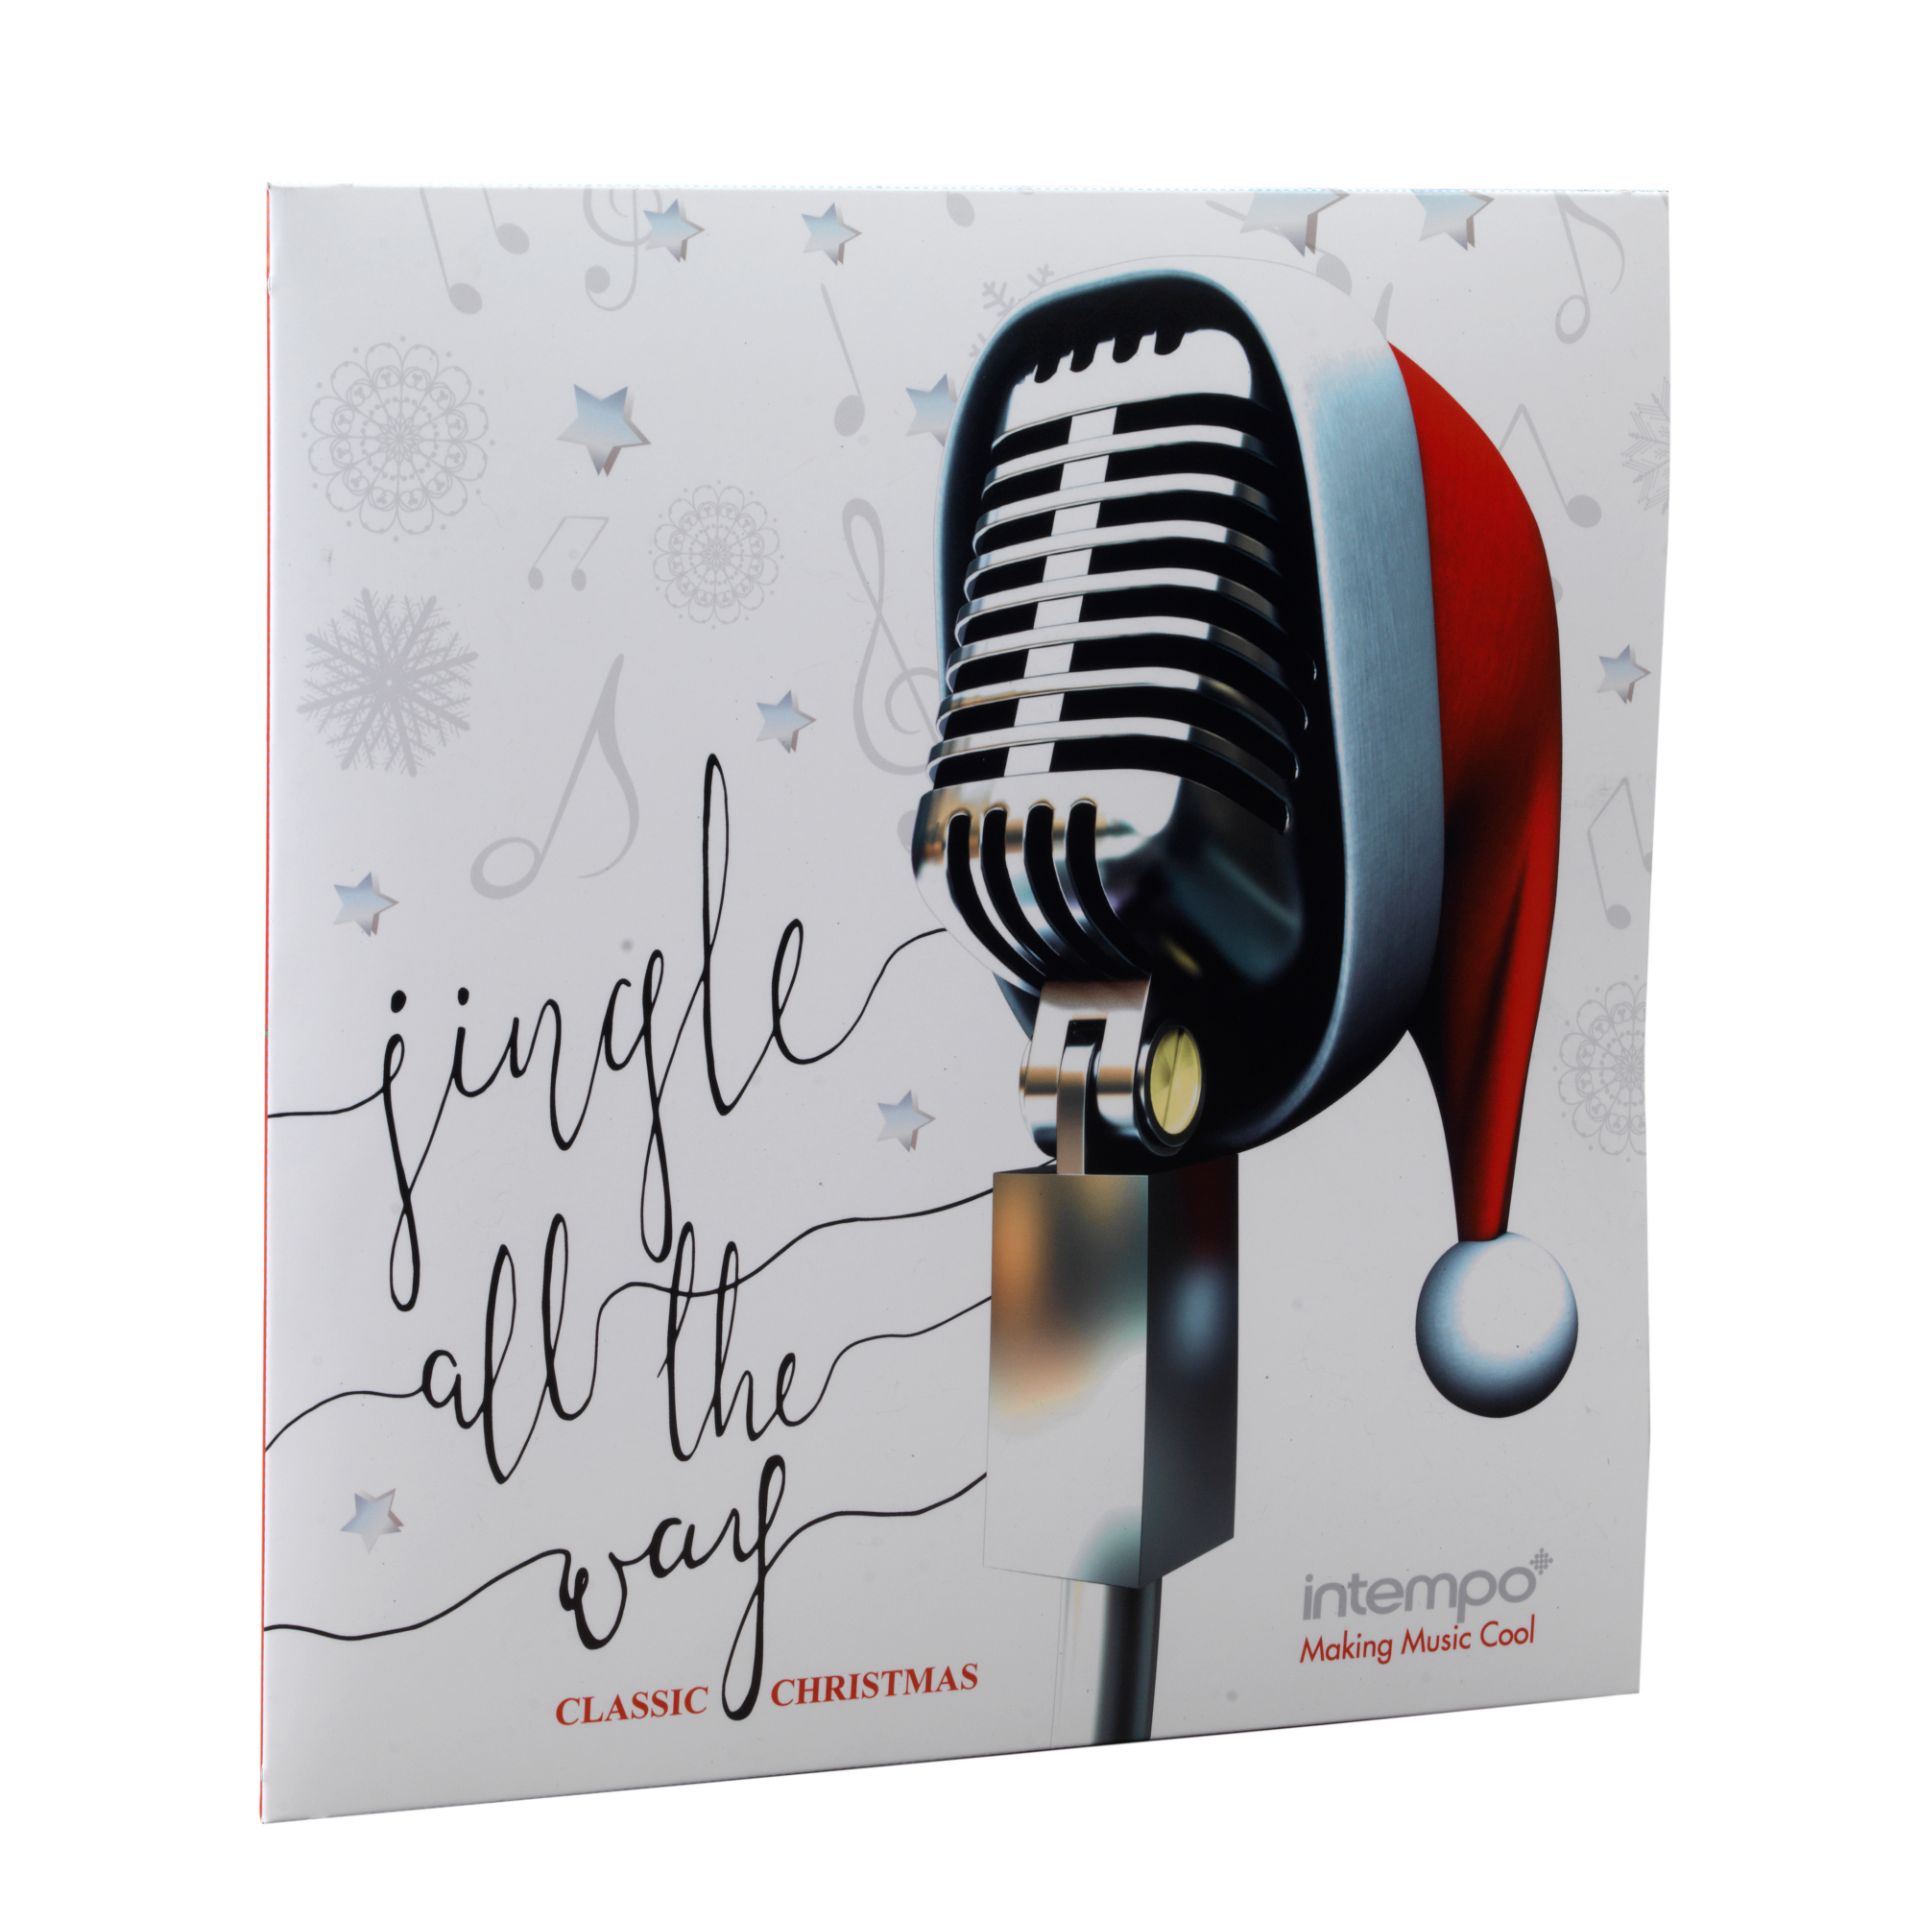 V Brand New Jingle All The Way Christmas CD - 16 Tracks including Perry Como - Dean Martin - Elvis